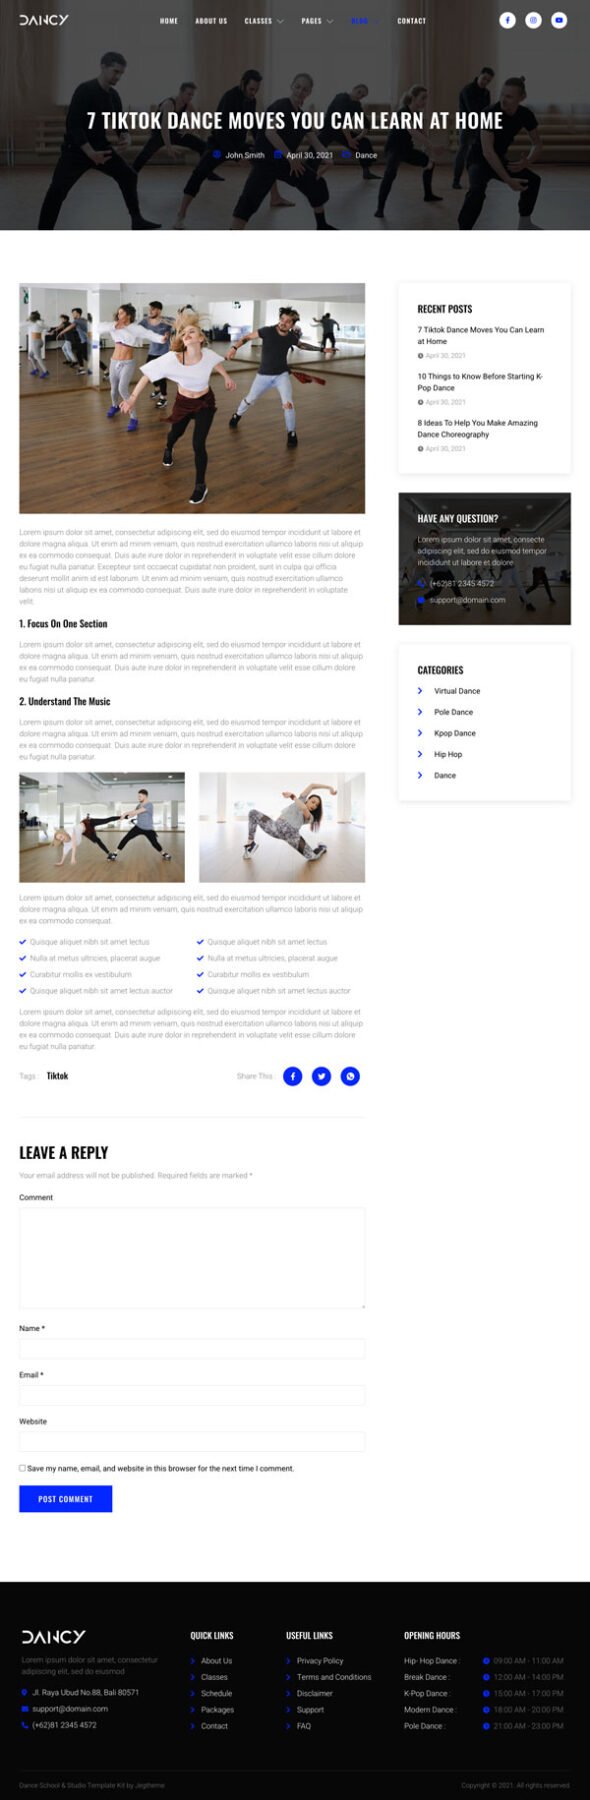 Dancy – Dance School & Studio Elementor Template Kit